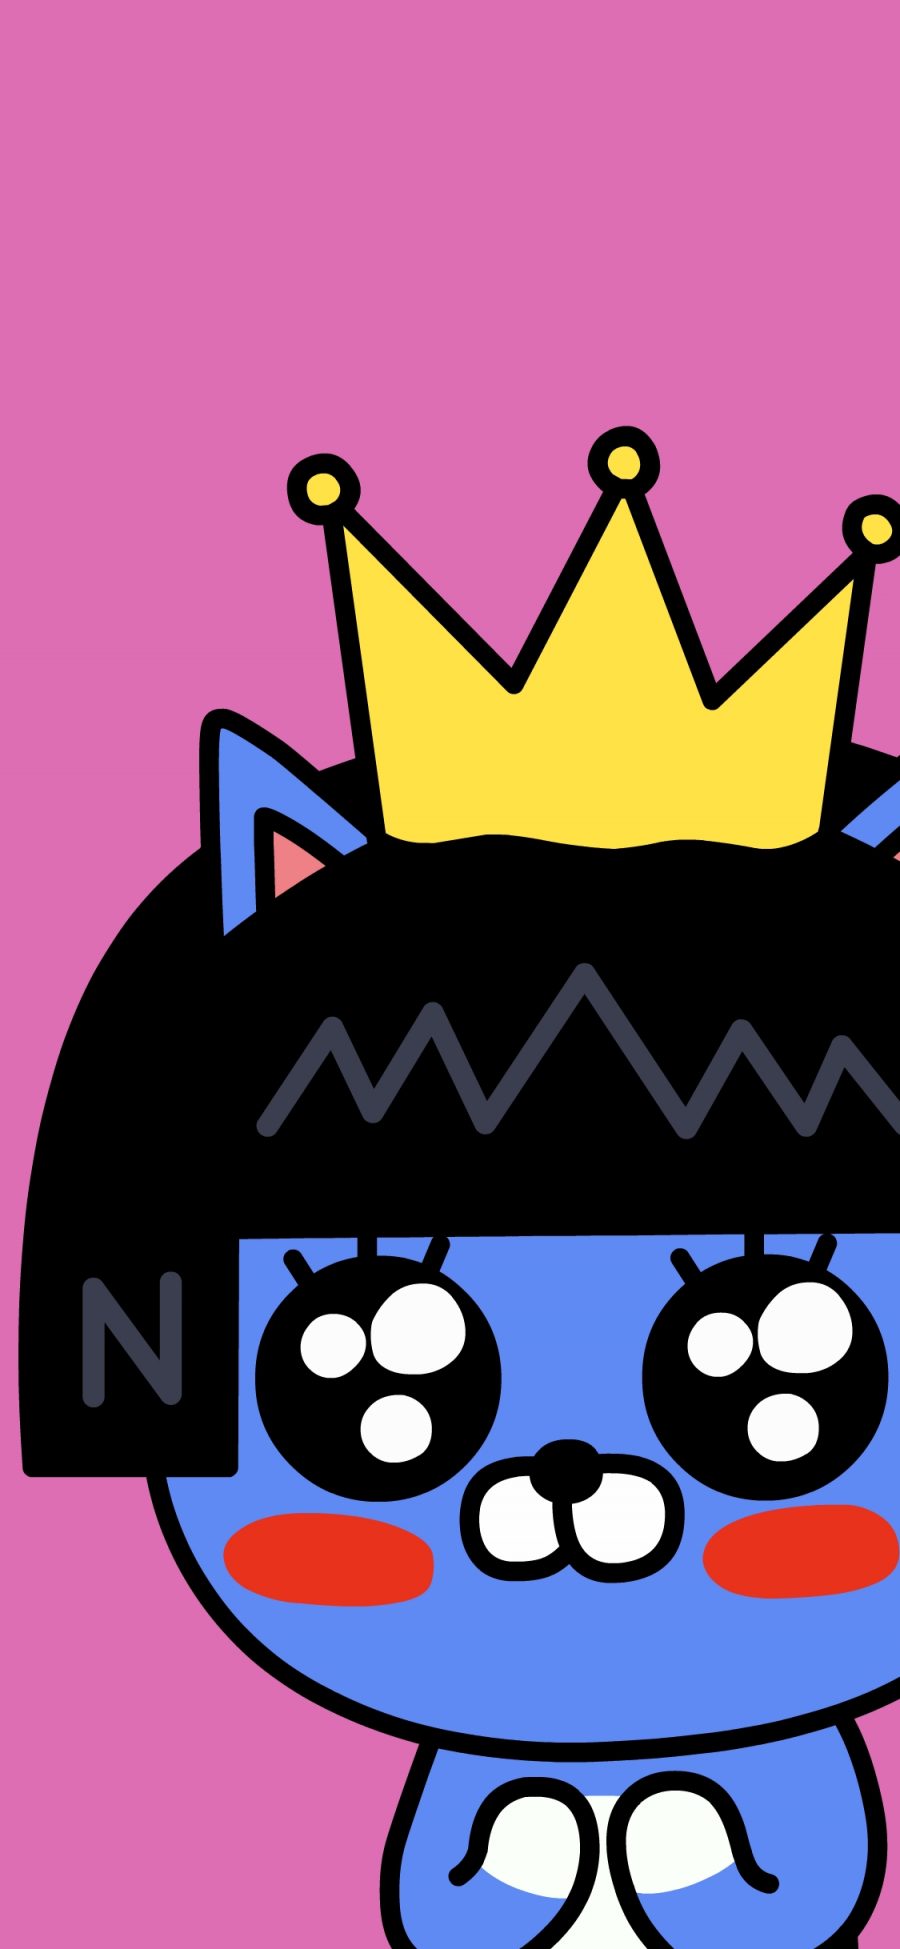 [2436×1125]皇冠 卡通 可爱 粉色 苹果手机动漫壁纸图片